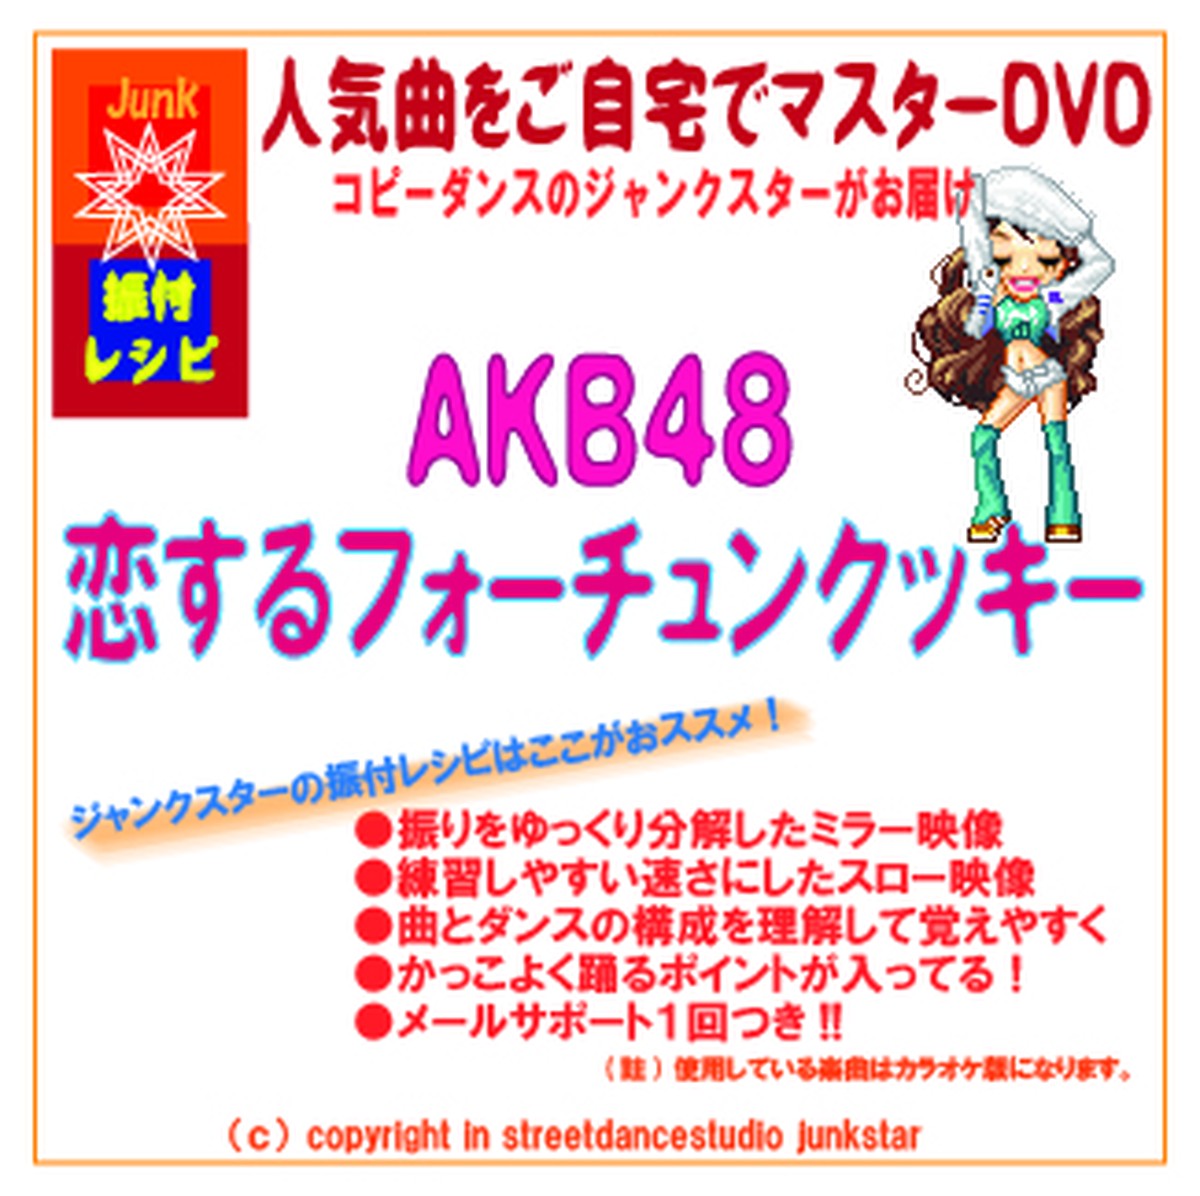 振付レシピ Dvd Akb48恋するフォーチュンクッキー Dotmods